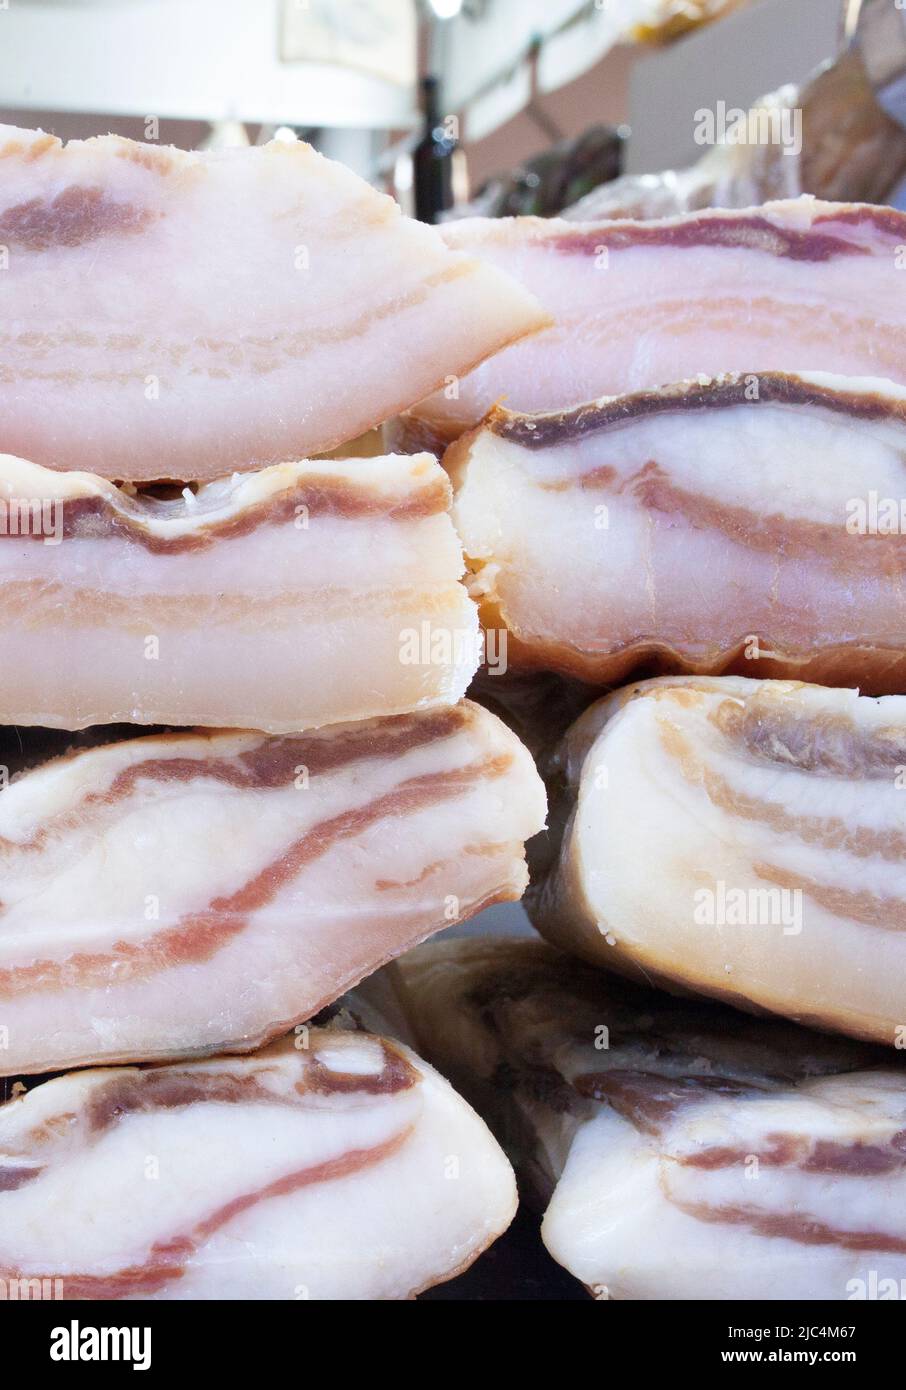 Iberisches, salzhaltig gehäutetes Schweinefett. Die Stücke werden am Straßenmarktstand ausgestellt Stockfoto